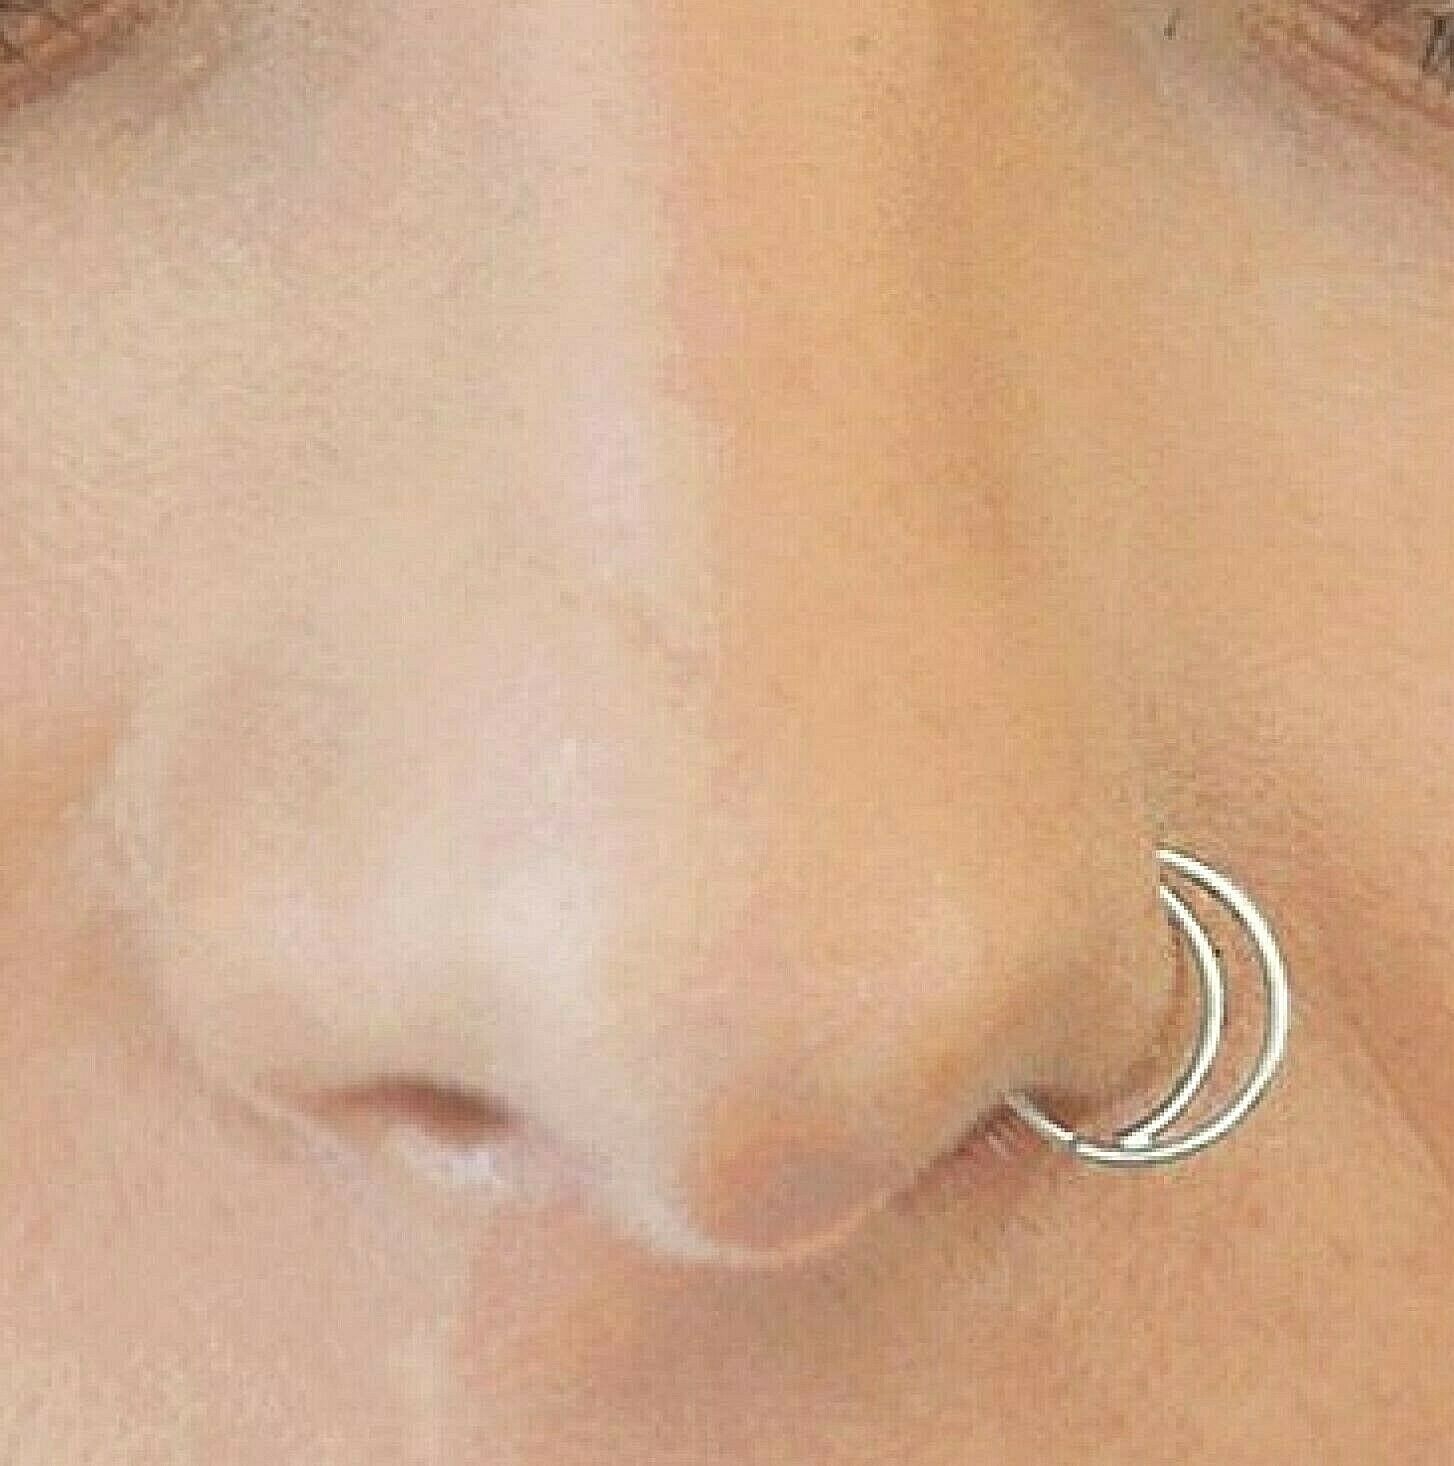 Moon Nose Ring 10mm Hoop 20g (0.8mm) Annealed Steel Septum Earring